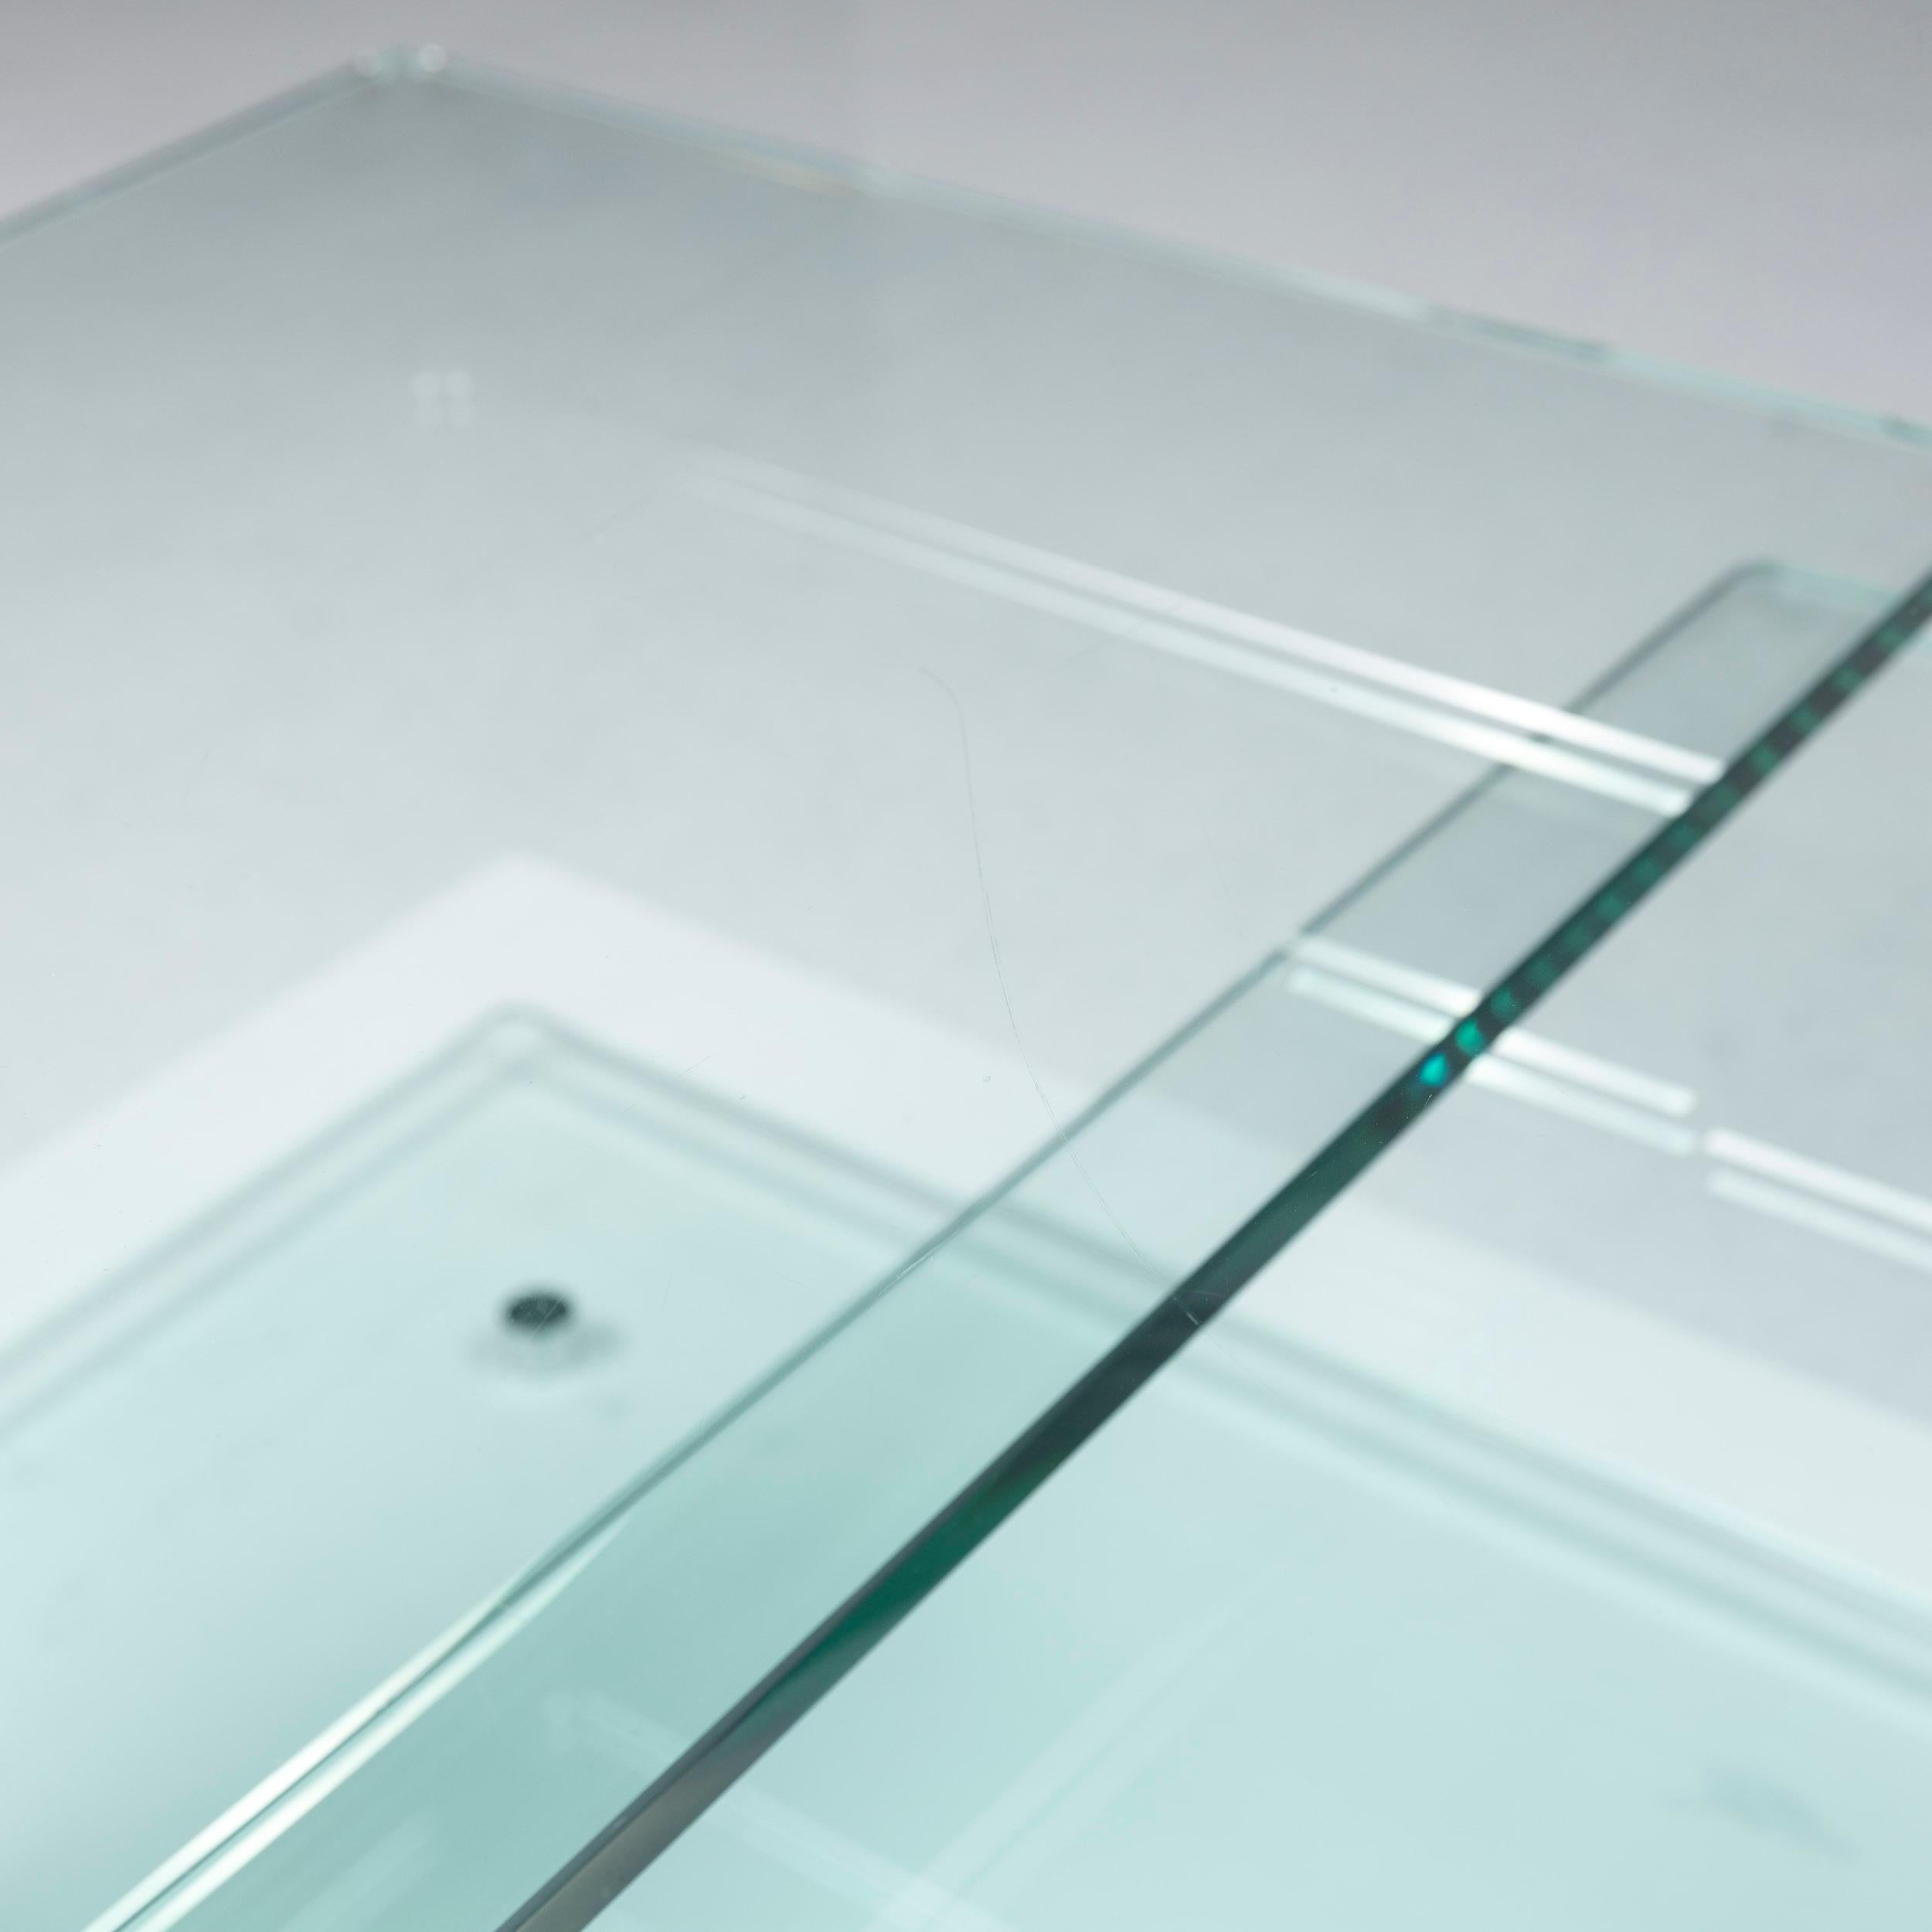 Hülsta Glass Couchtisch Silber Chrome Function Tisch 2